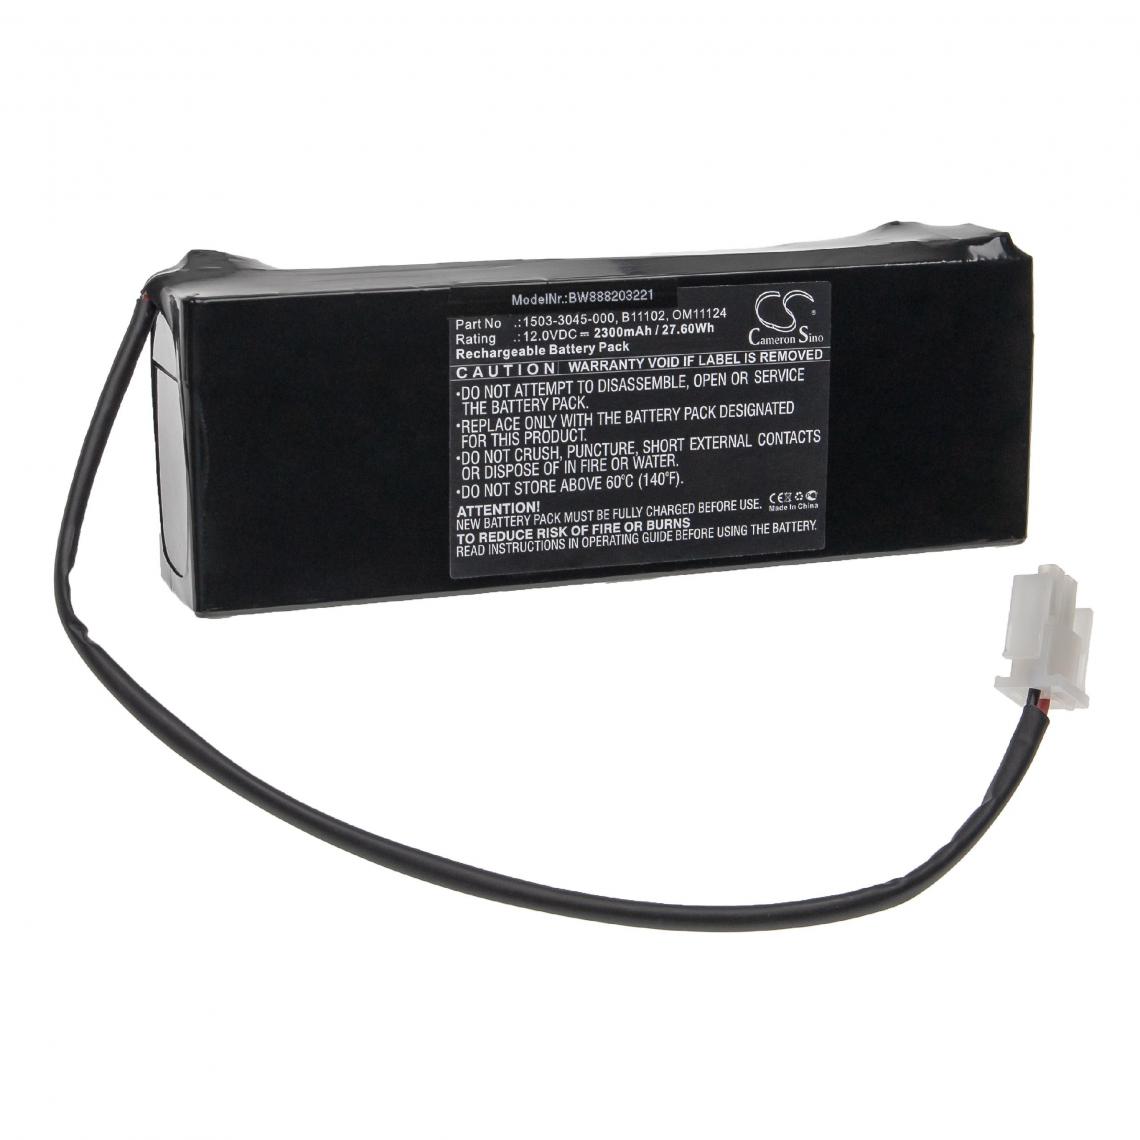 Vhbw - vhbw Batterie compatible avec GE ARC Aestiva 7100, ARC Monitor CardioCap 5 appareil médical (2300mAh, 12V, Sealed Lead Acid) - Piles spécifiques